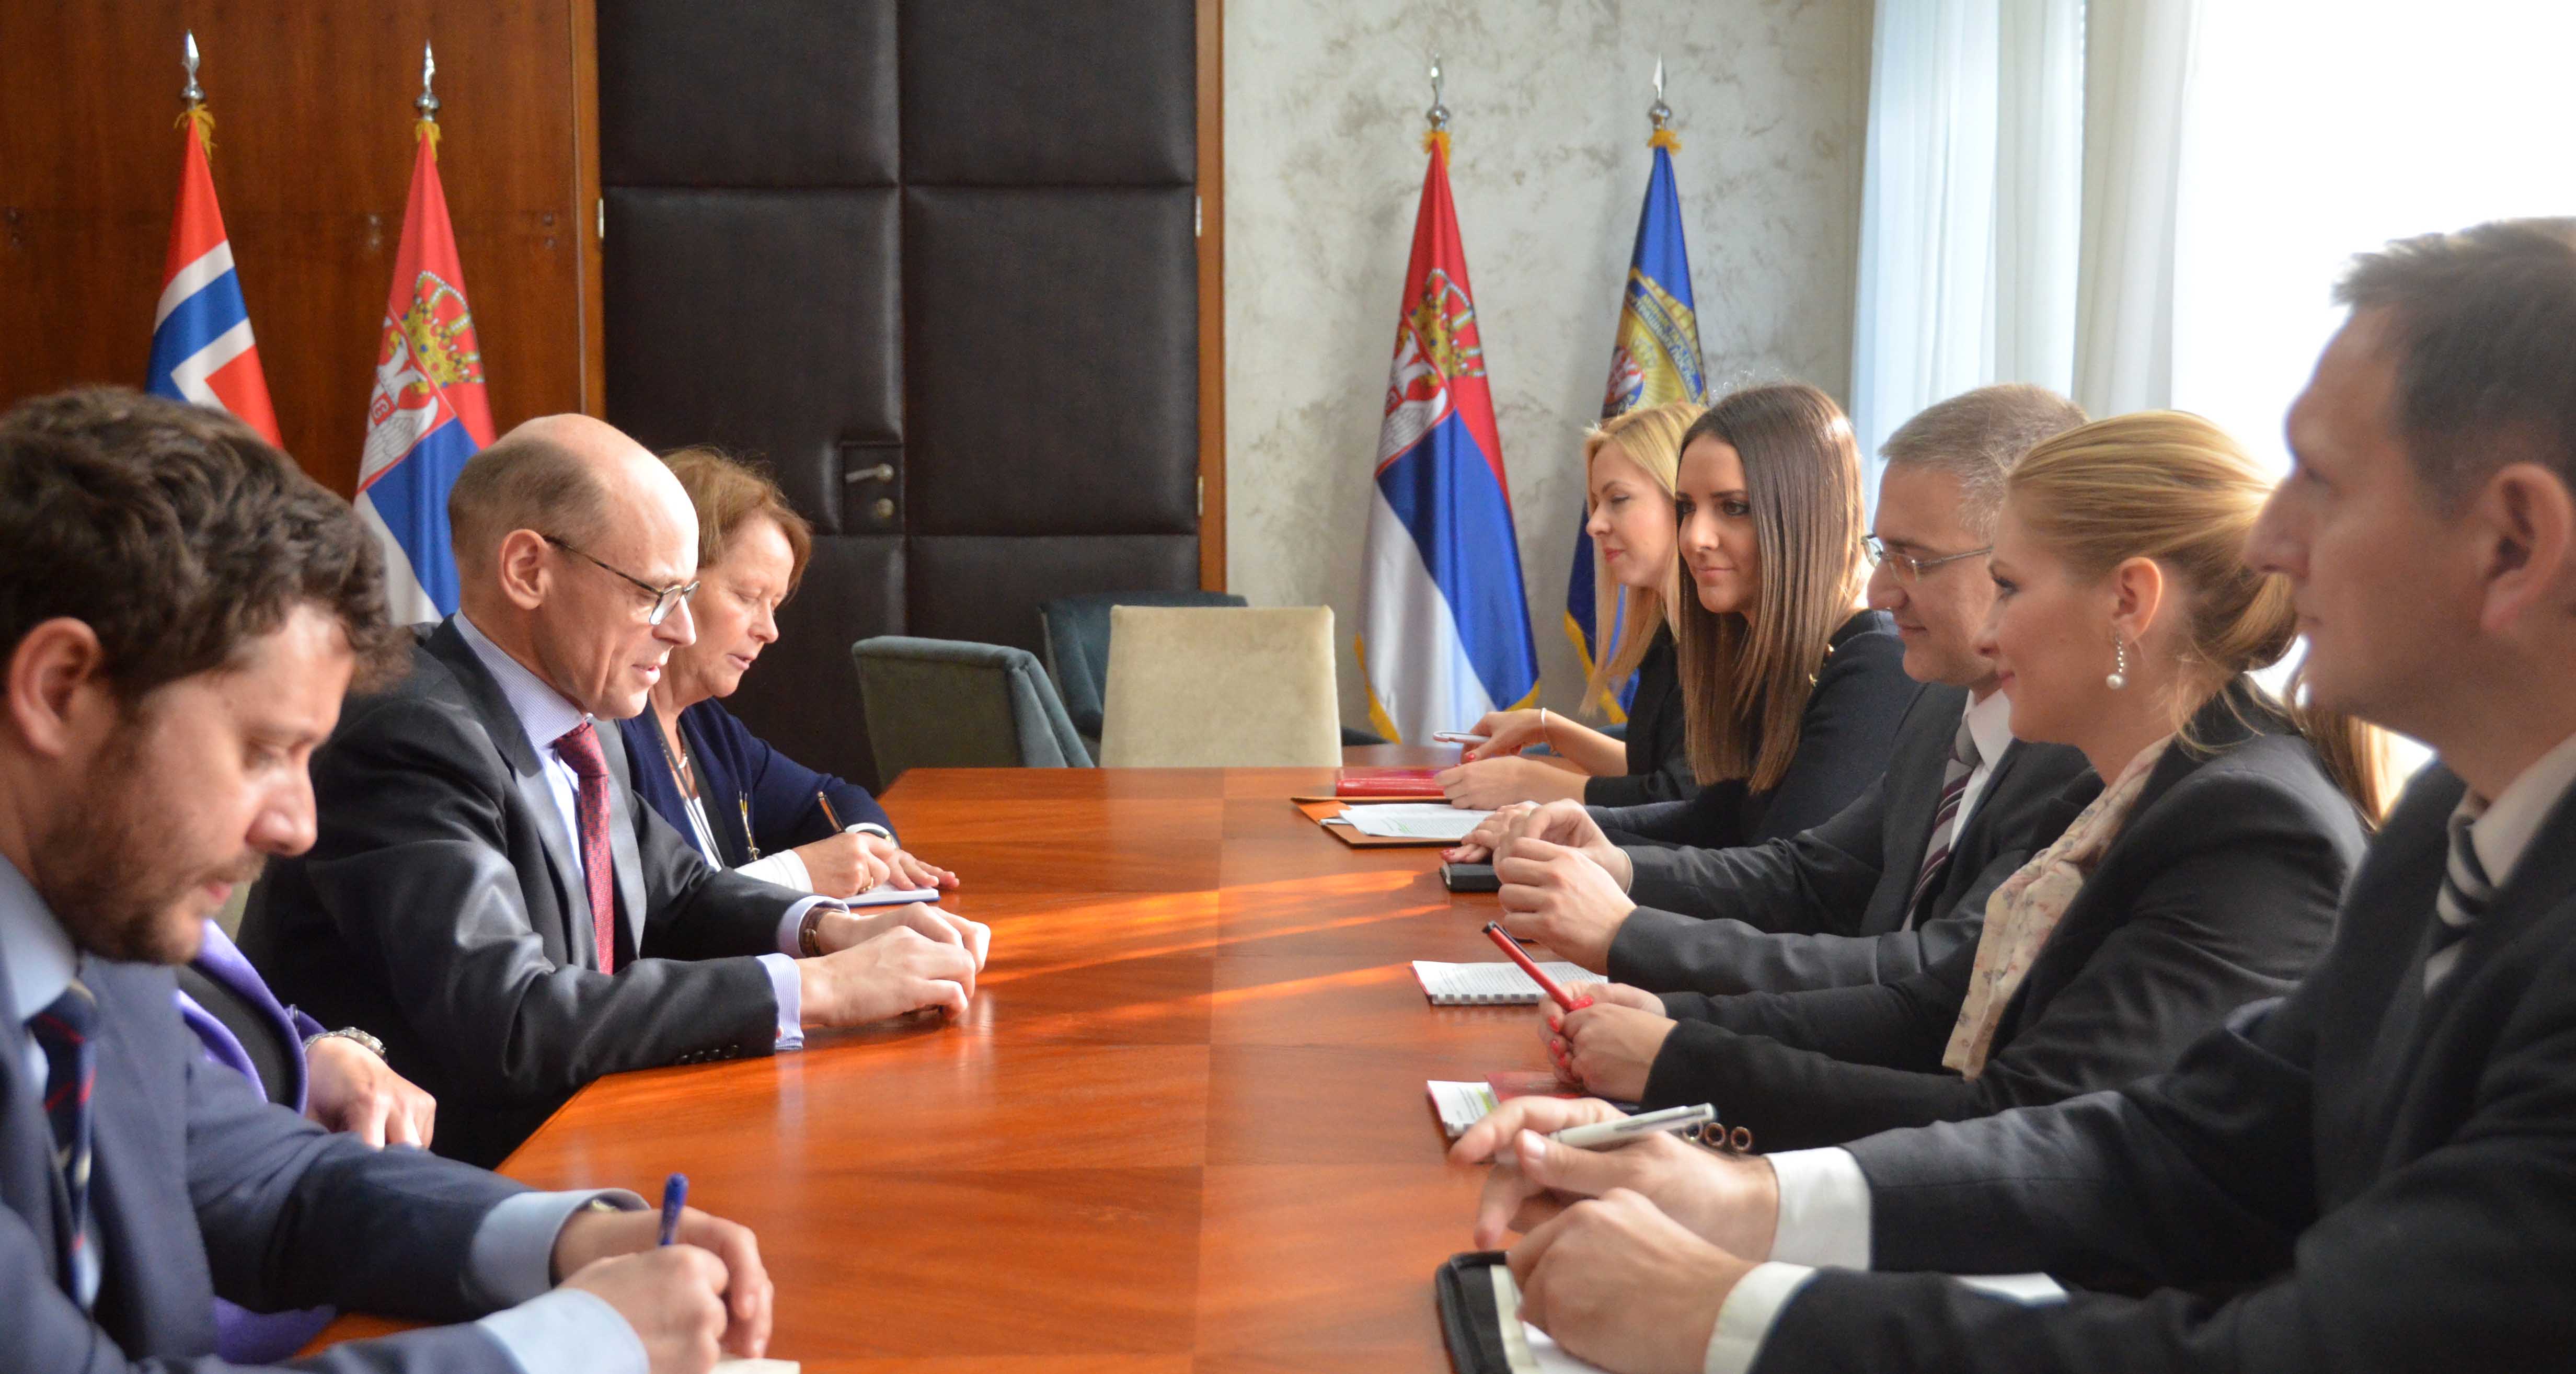 Краљевина Норвешка наставиће да пружа Србији подршку у реформским процесима